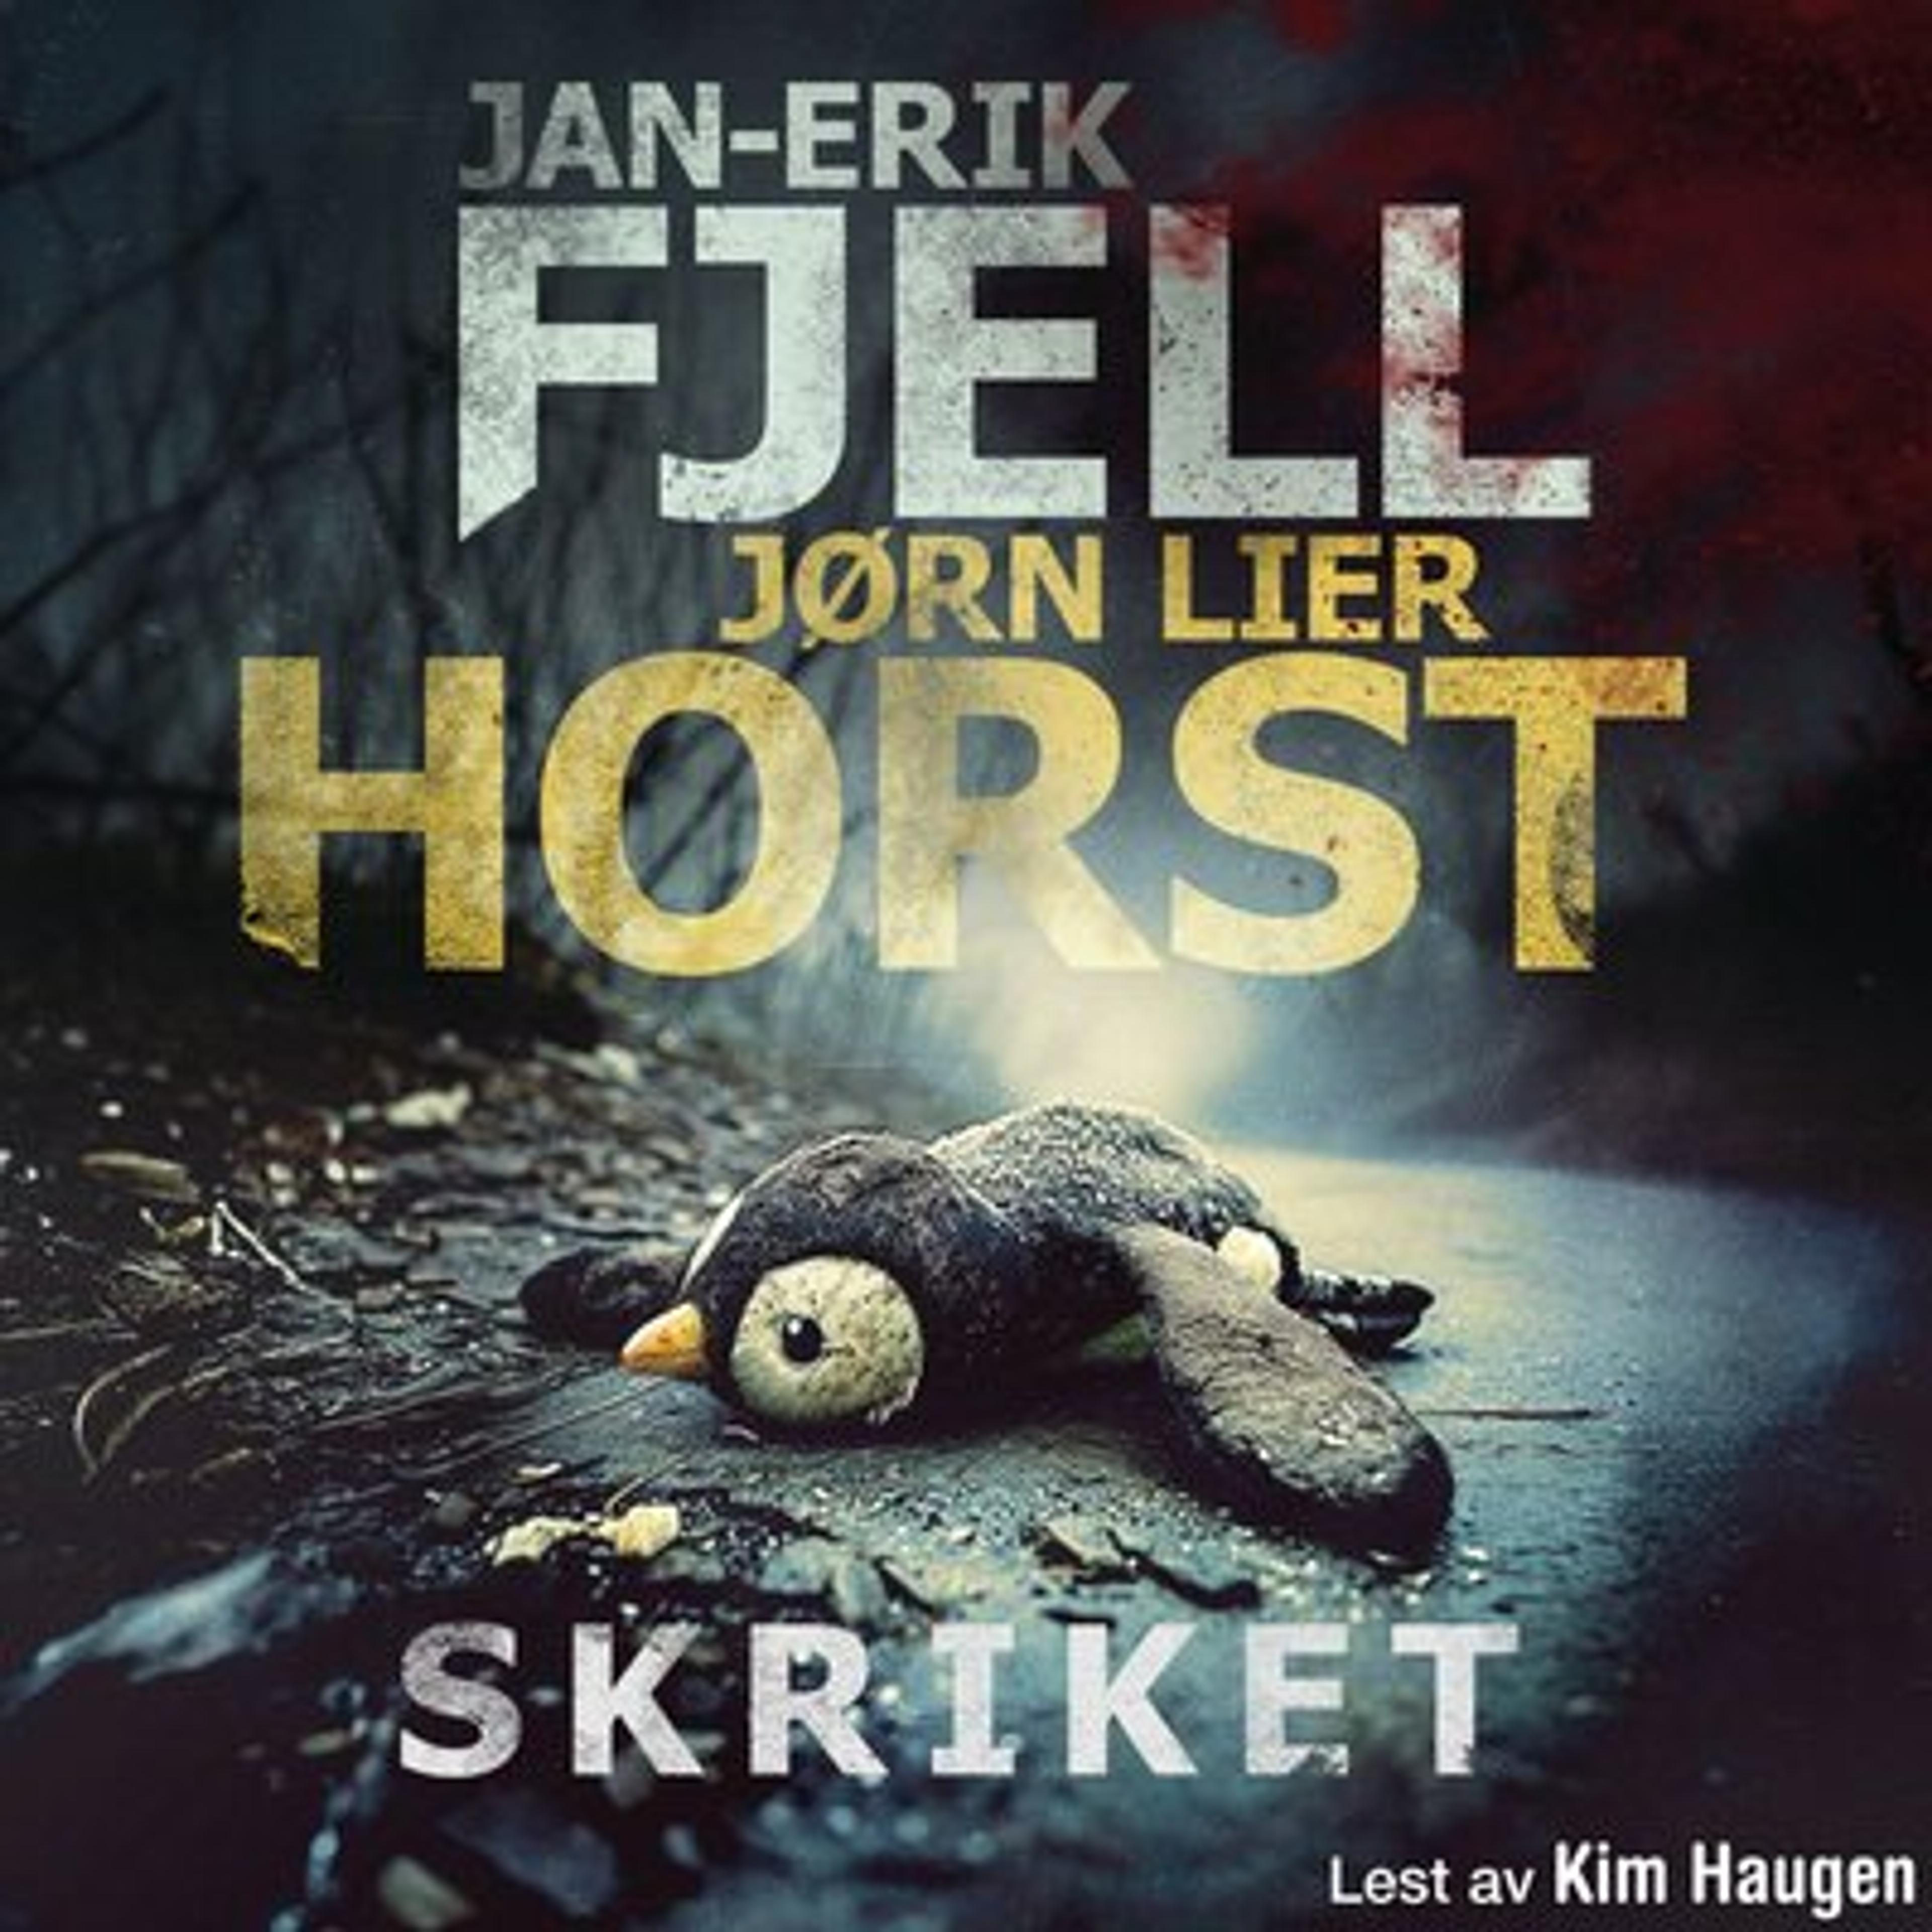 Skriket av Jørn Lier Horst og Jan-Erik Fjell 